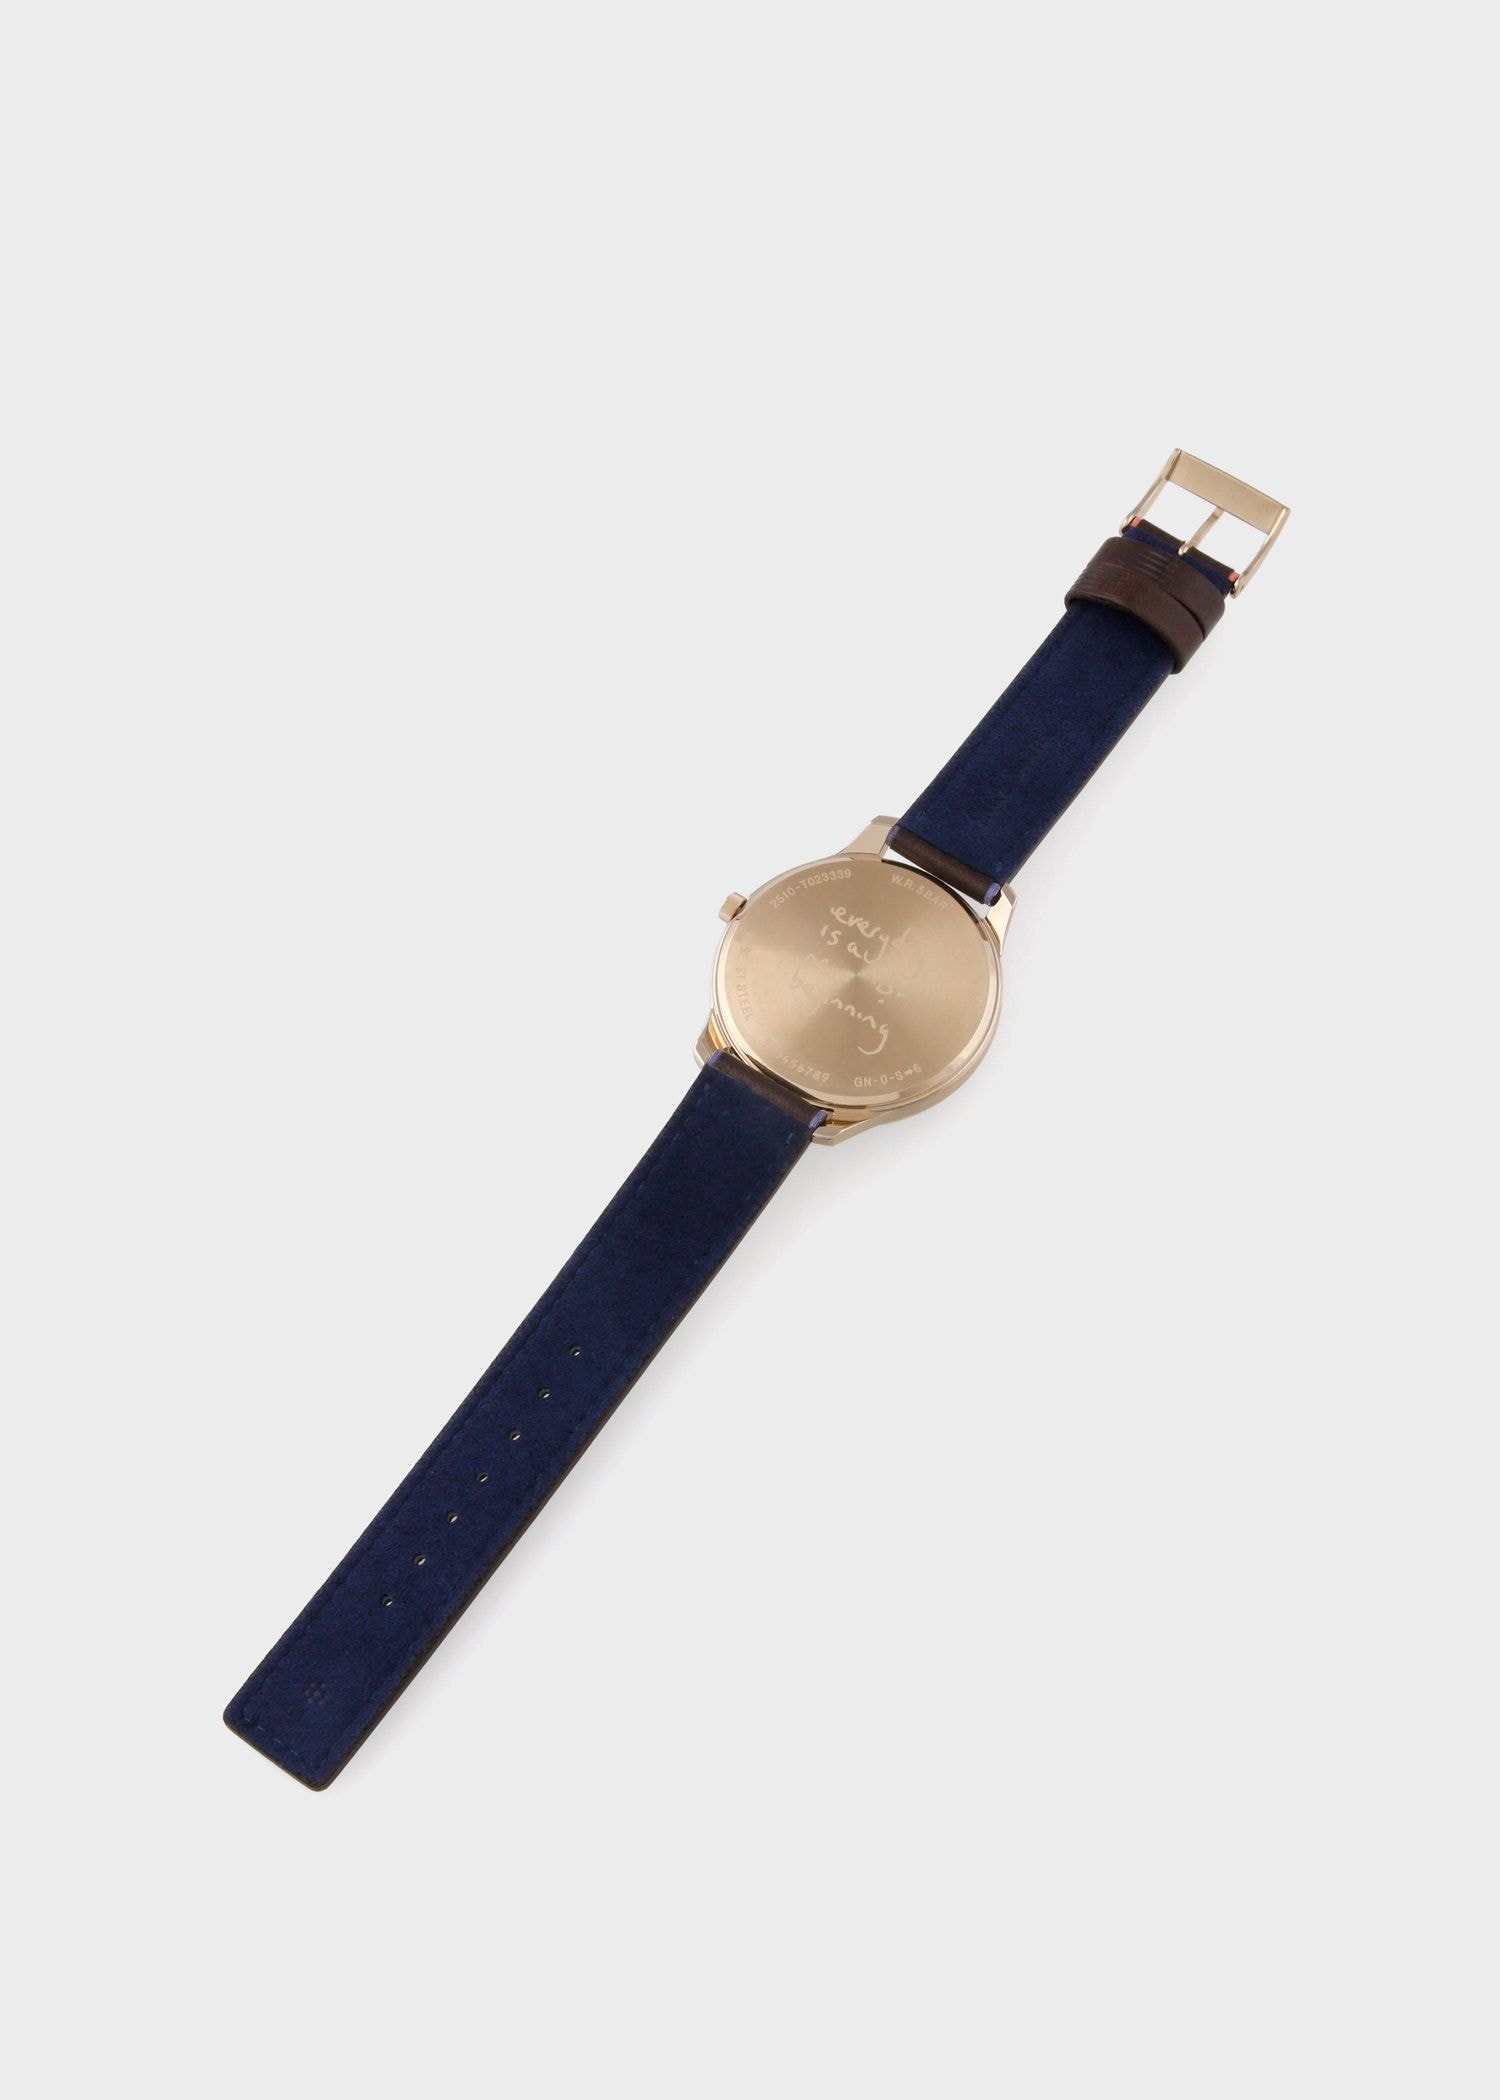 9,600円【美品】ポールスミス 腕時計 クロノグラフ ゴールド ザシティ